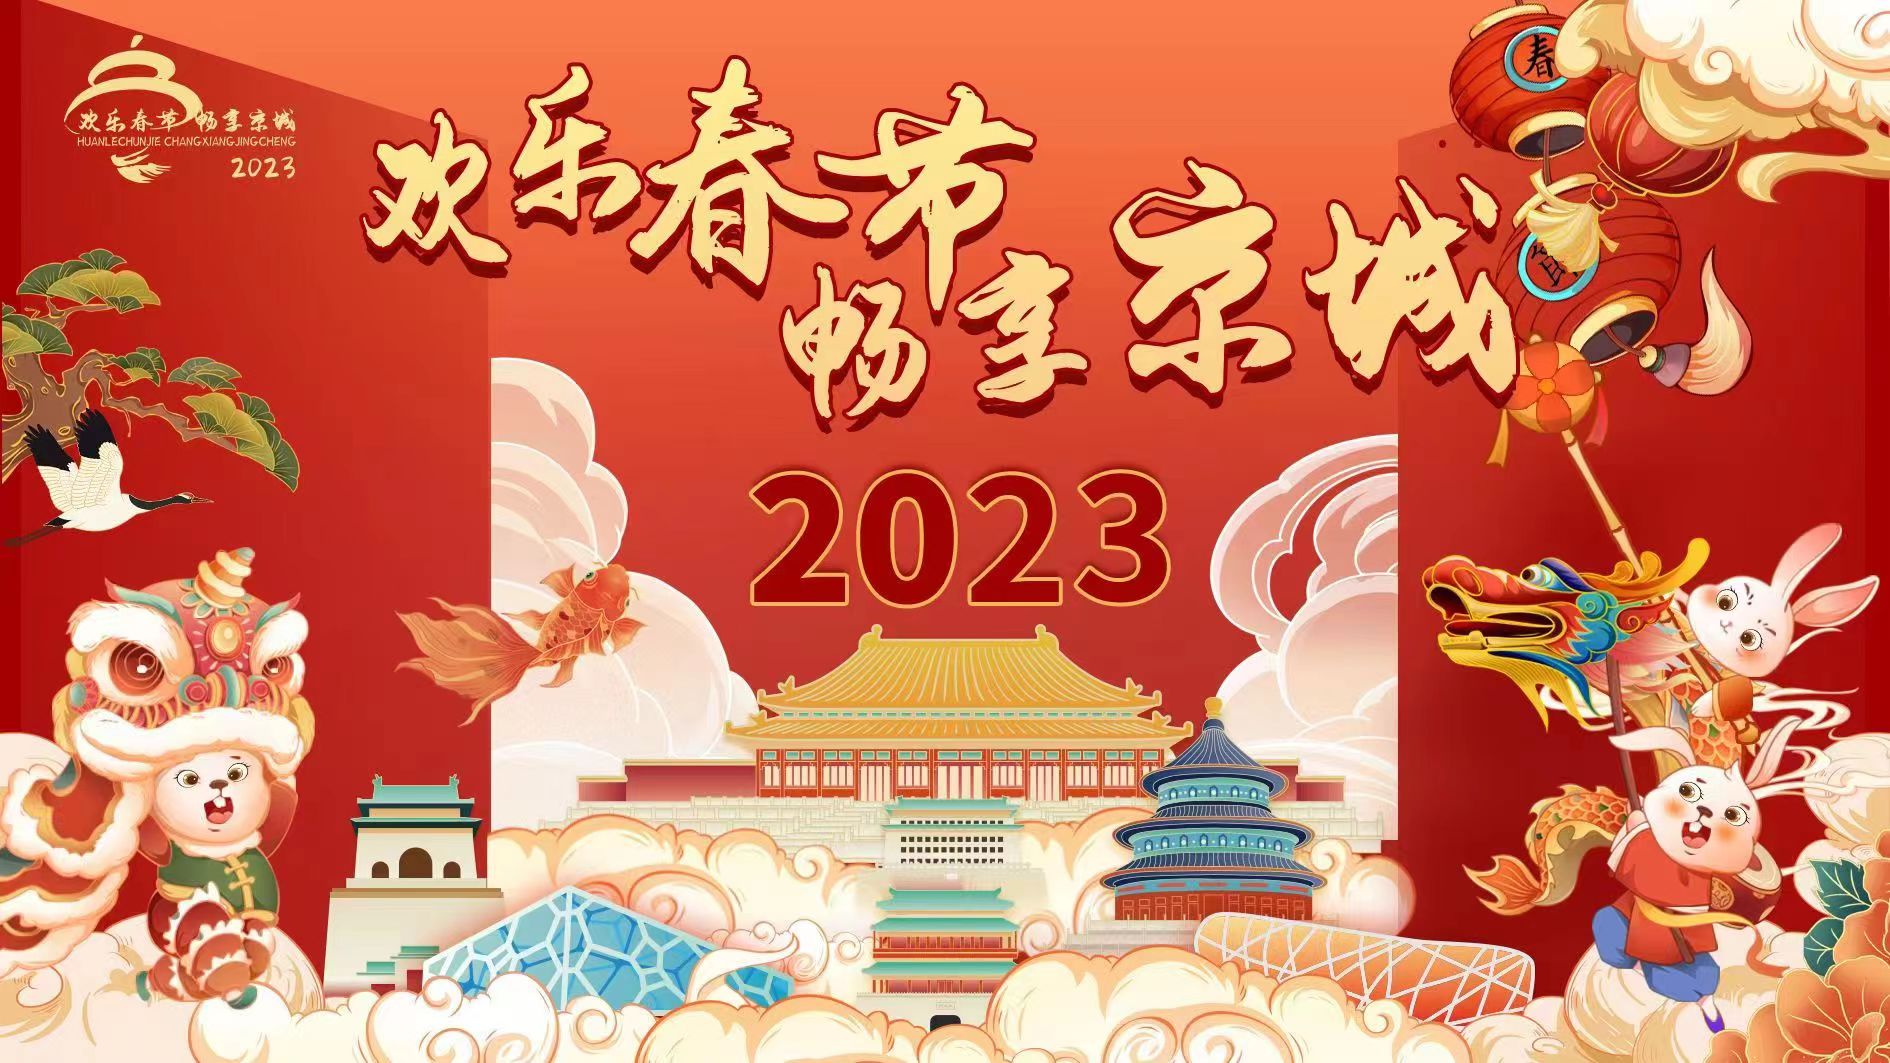 新春送祝福 | 北京市文化和旅游局给您拜年啦